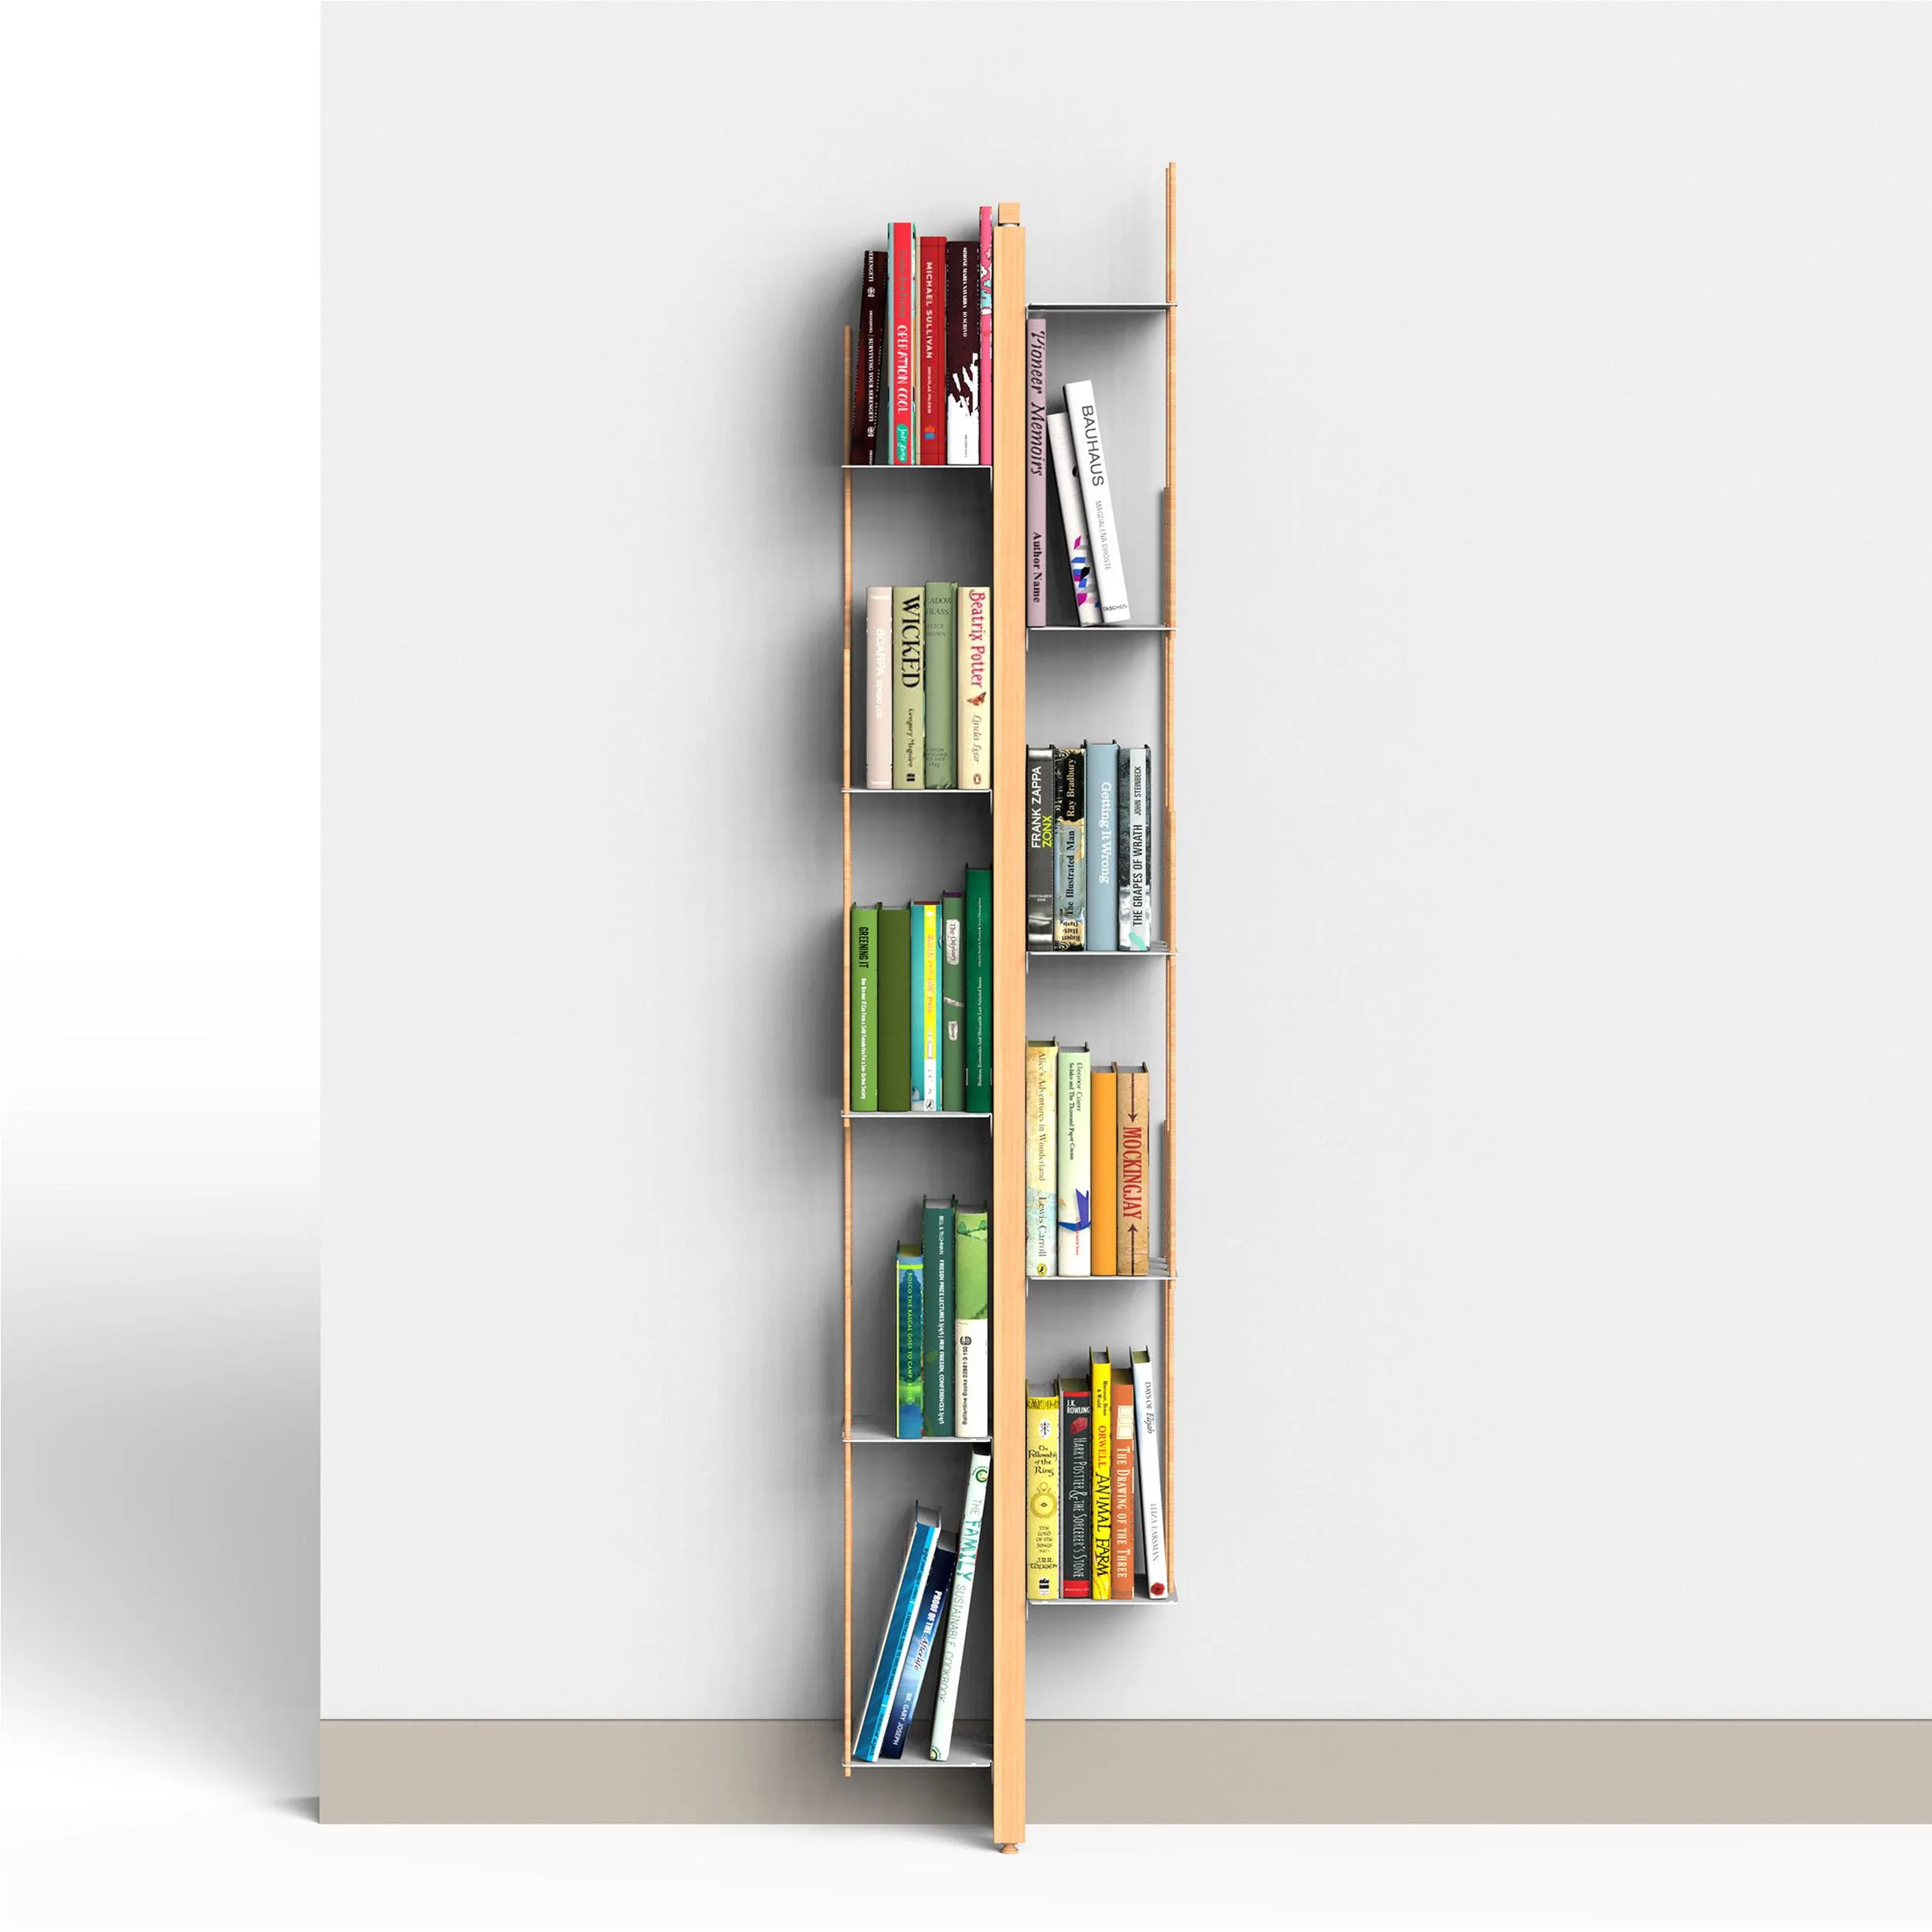 Libreria verticale Fissaggio a PARETE ZIA VERONICA 20x32xh 155 cm con struttura e bacchette in legno massello di faggio evaporato colore naturale. Mensole in acciaio smaltato